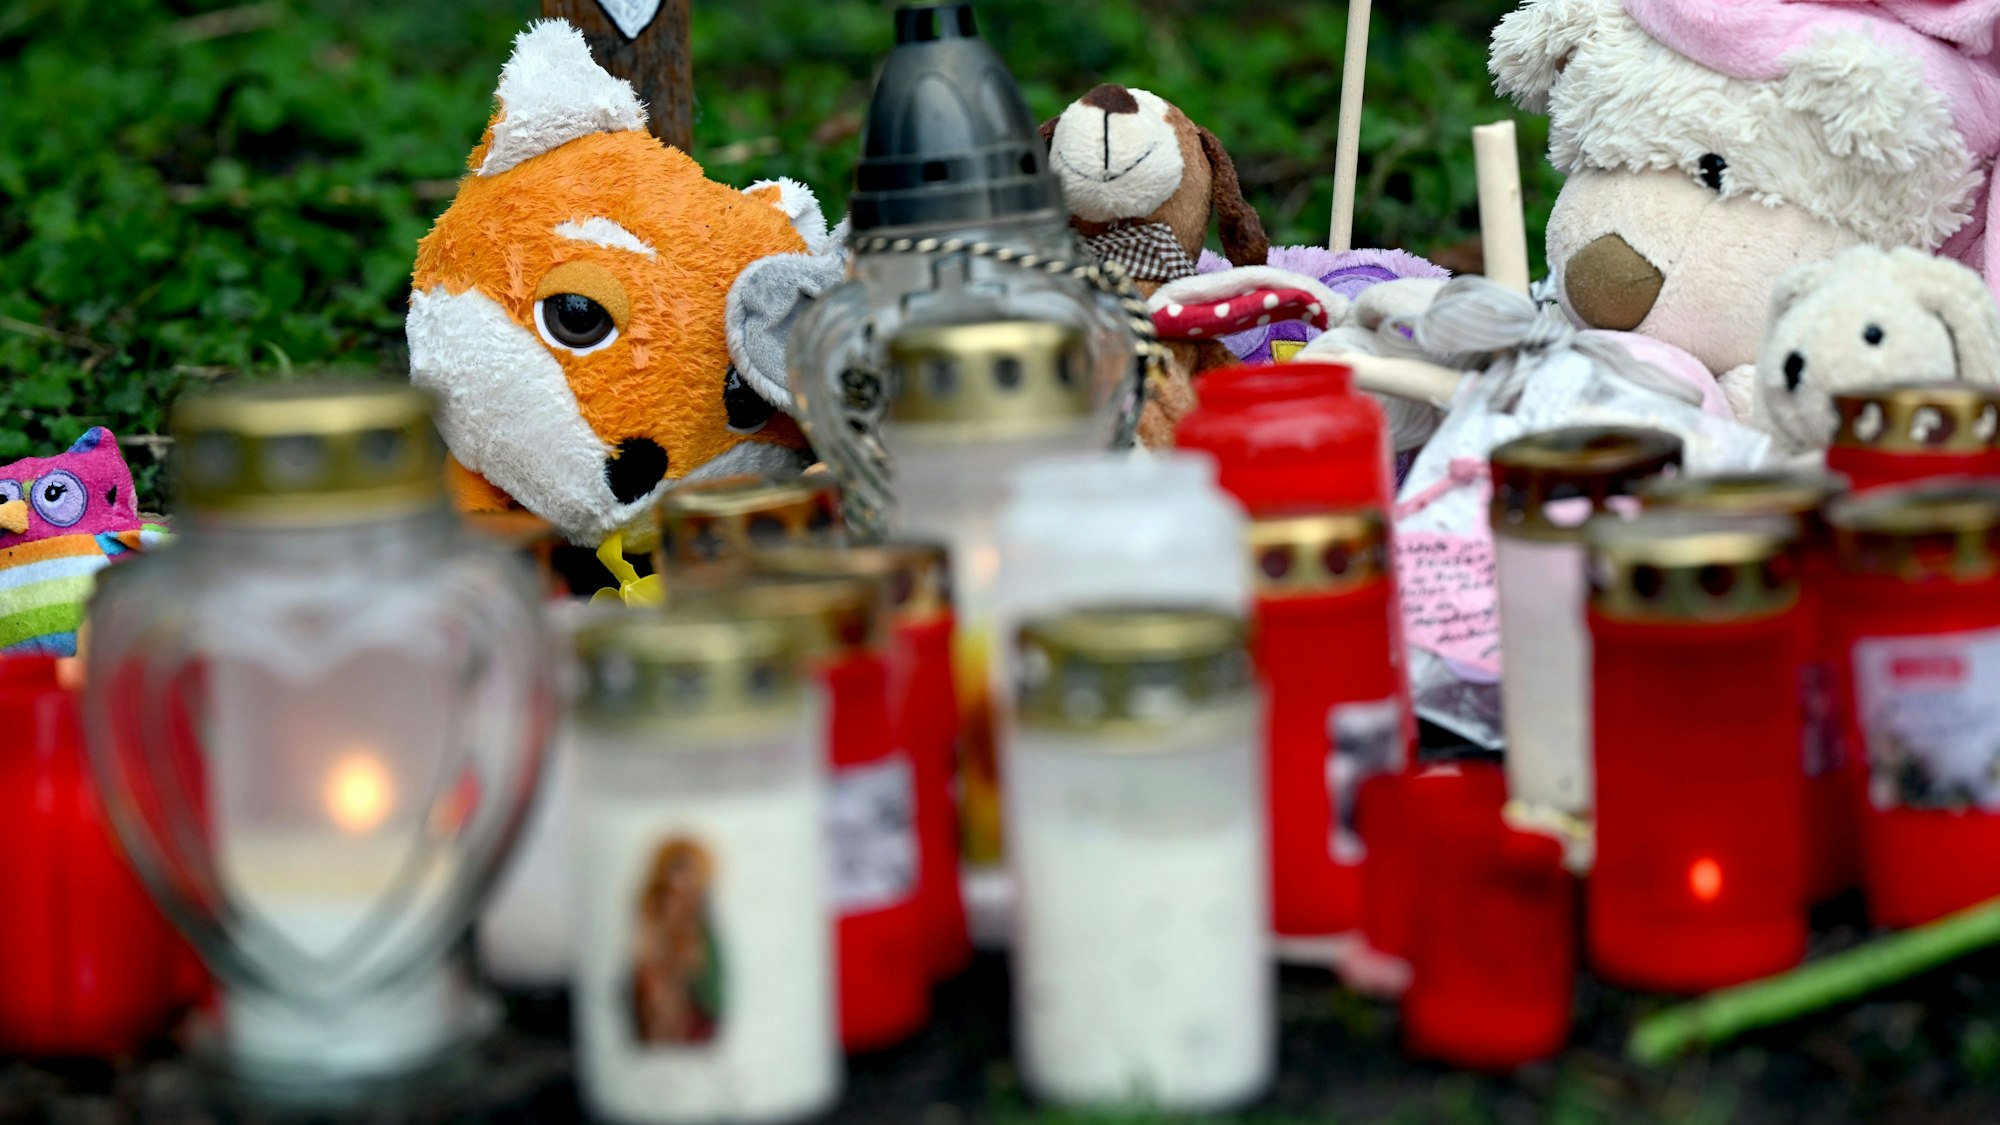 Kerzen und Stofftiere am Fundort eines getöteten Babys.